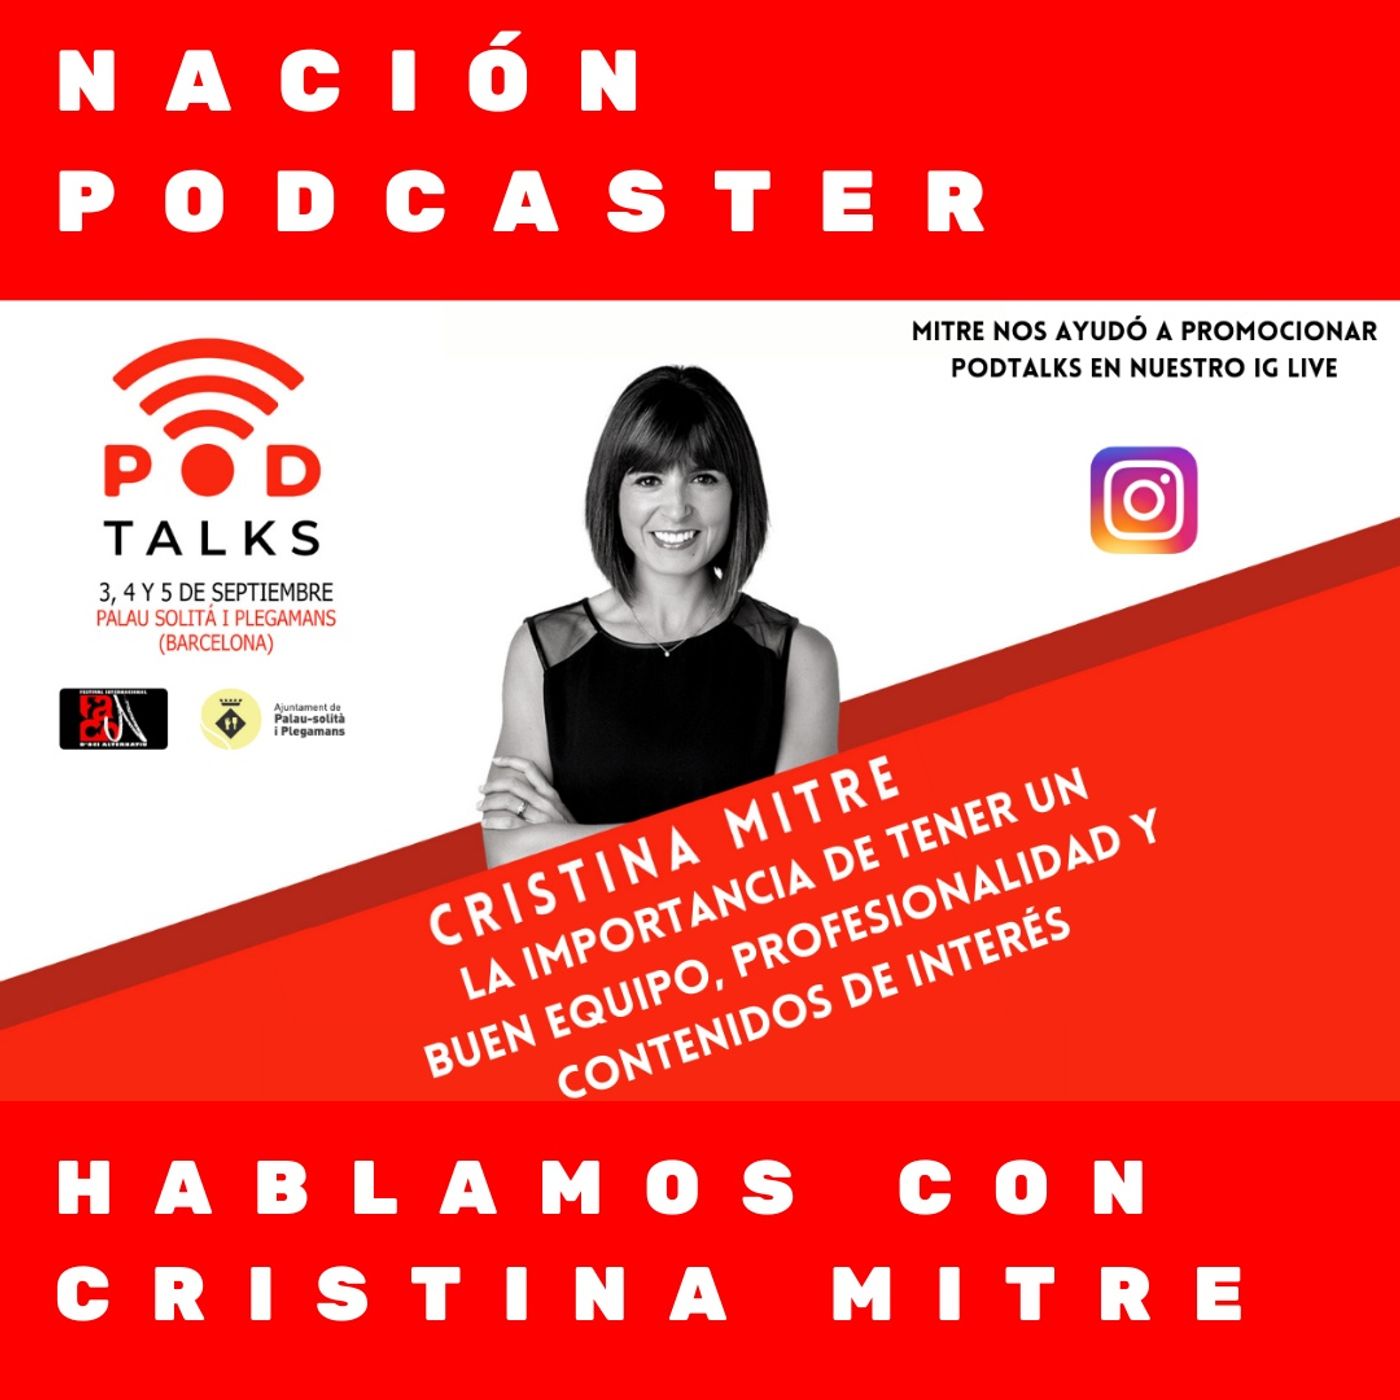 Hablamos con Cristina Mitre sobre podcasting y sobre tener un buen equipo de personas @cristinamitre